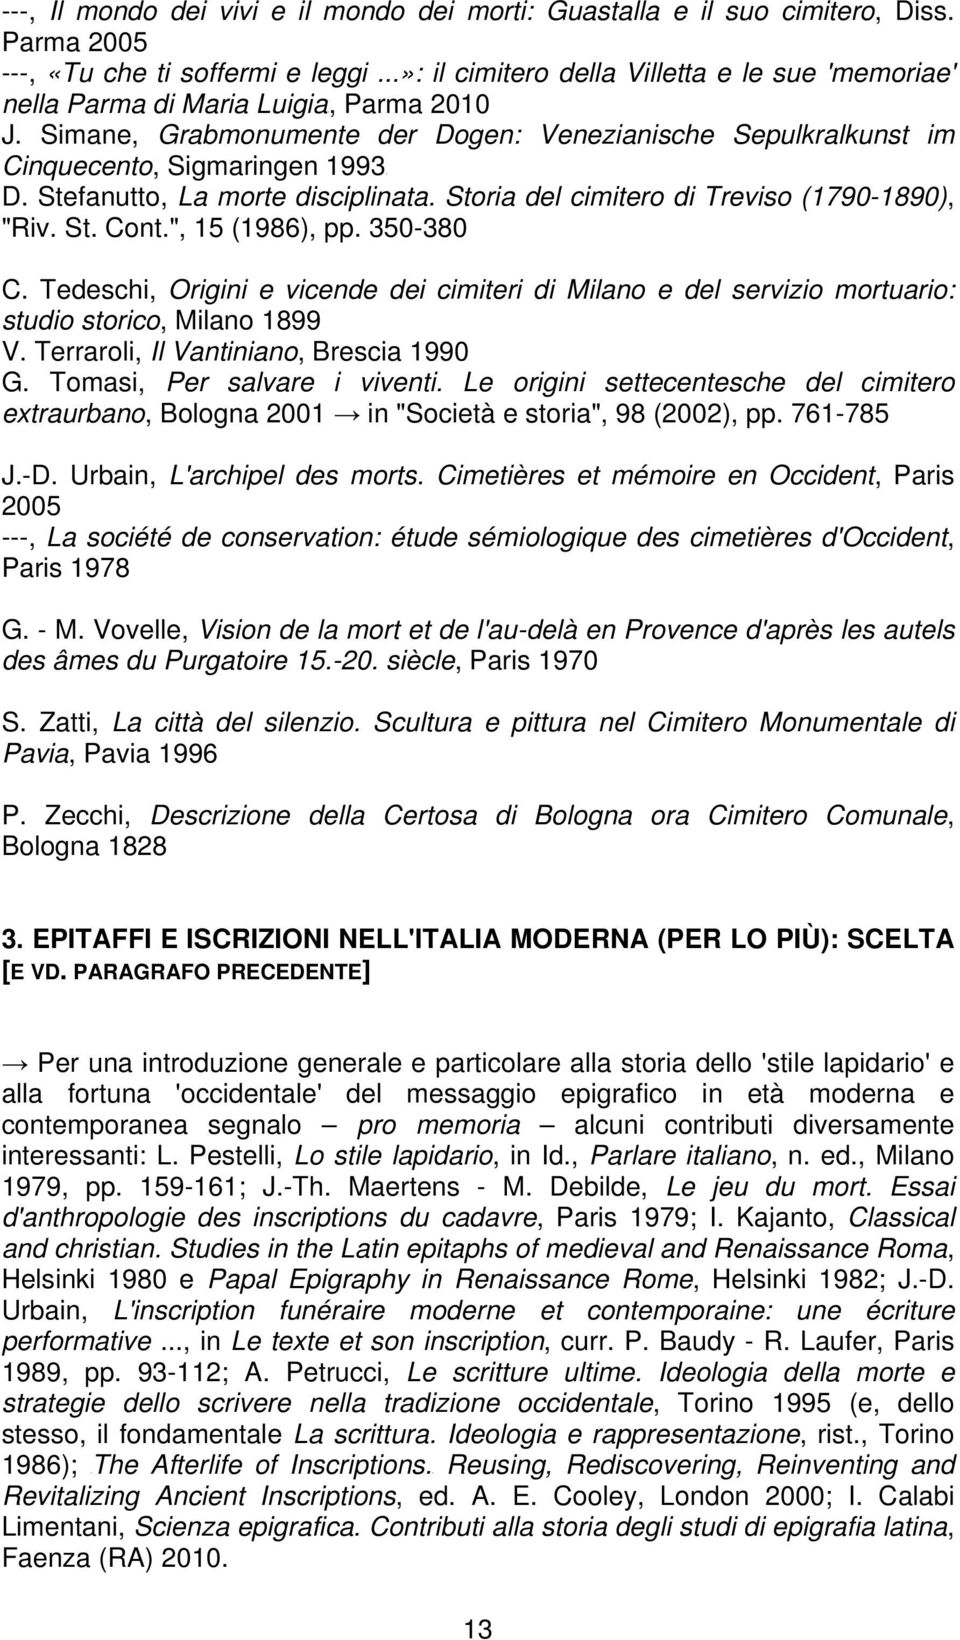 Stefanutto, La morte disciplinata. Storia del cimitero di Treviso (1790-1890), "Riv. St. Cont.", 15 (1986), pp. 350-380 C.